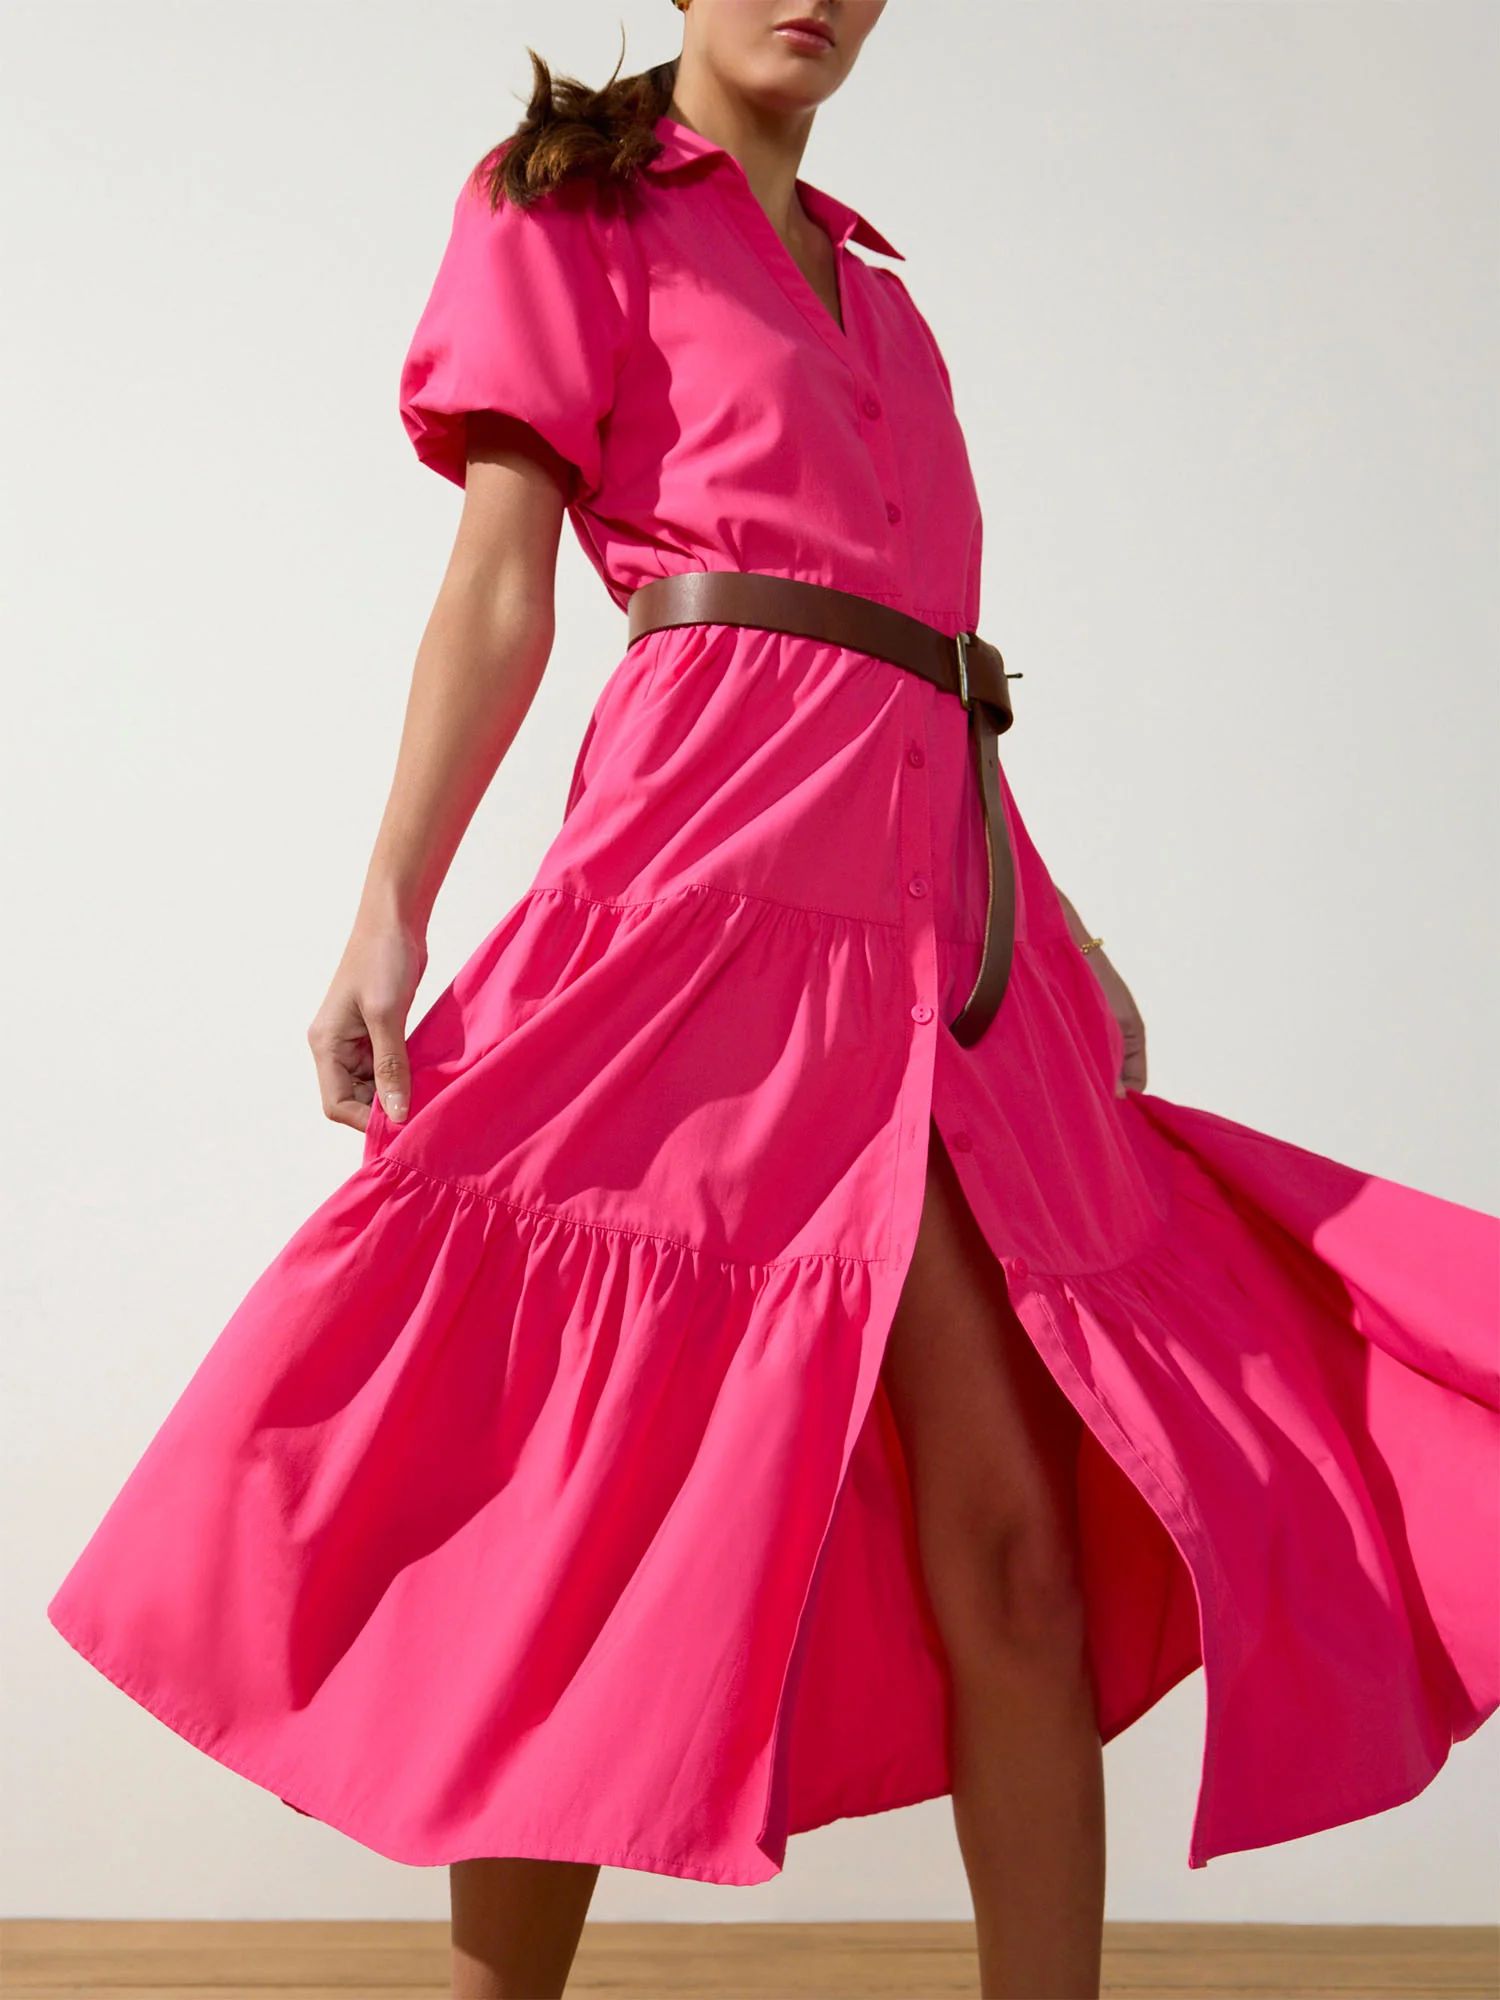 Brochu Walker | Women's Havana Dress in Hot Pink | Brochu Walker